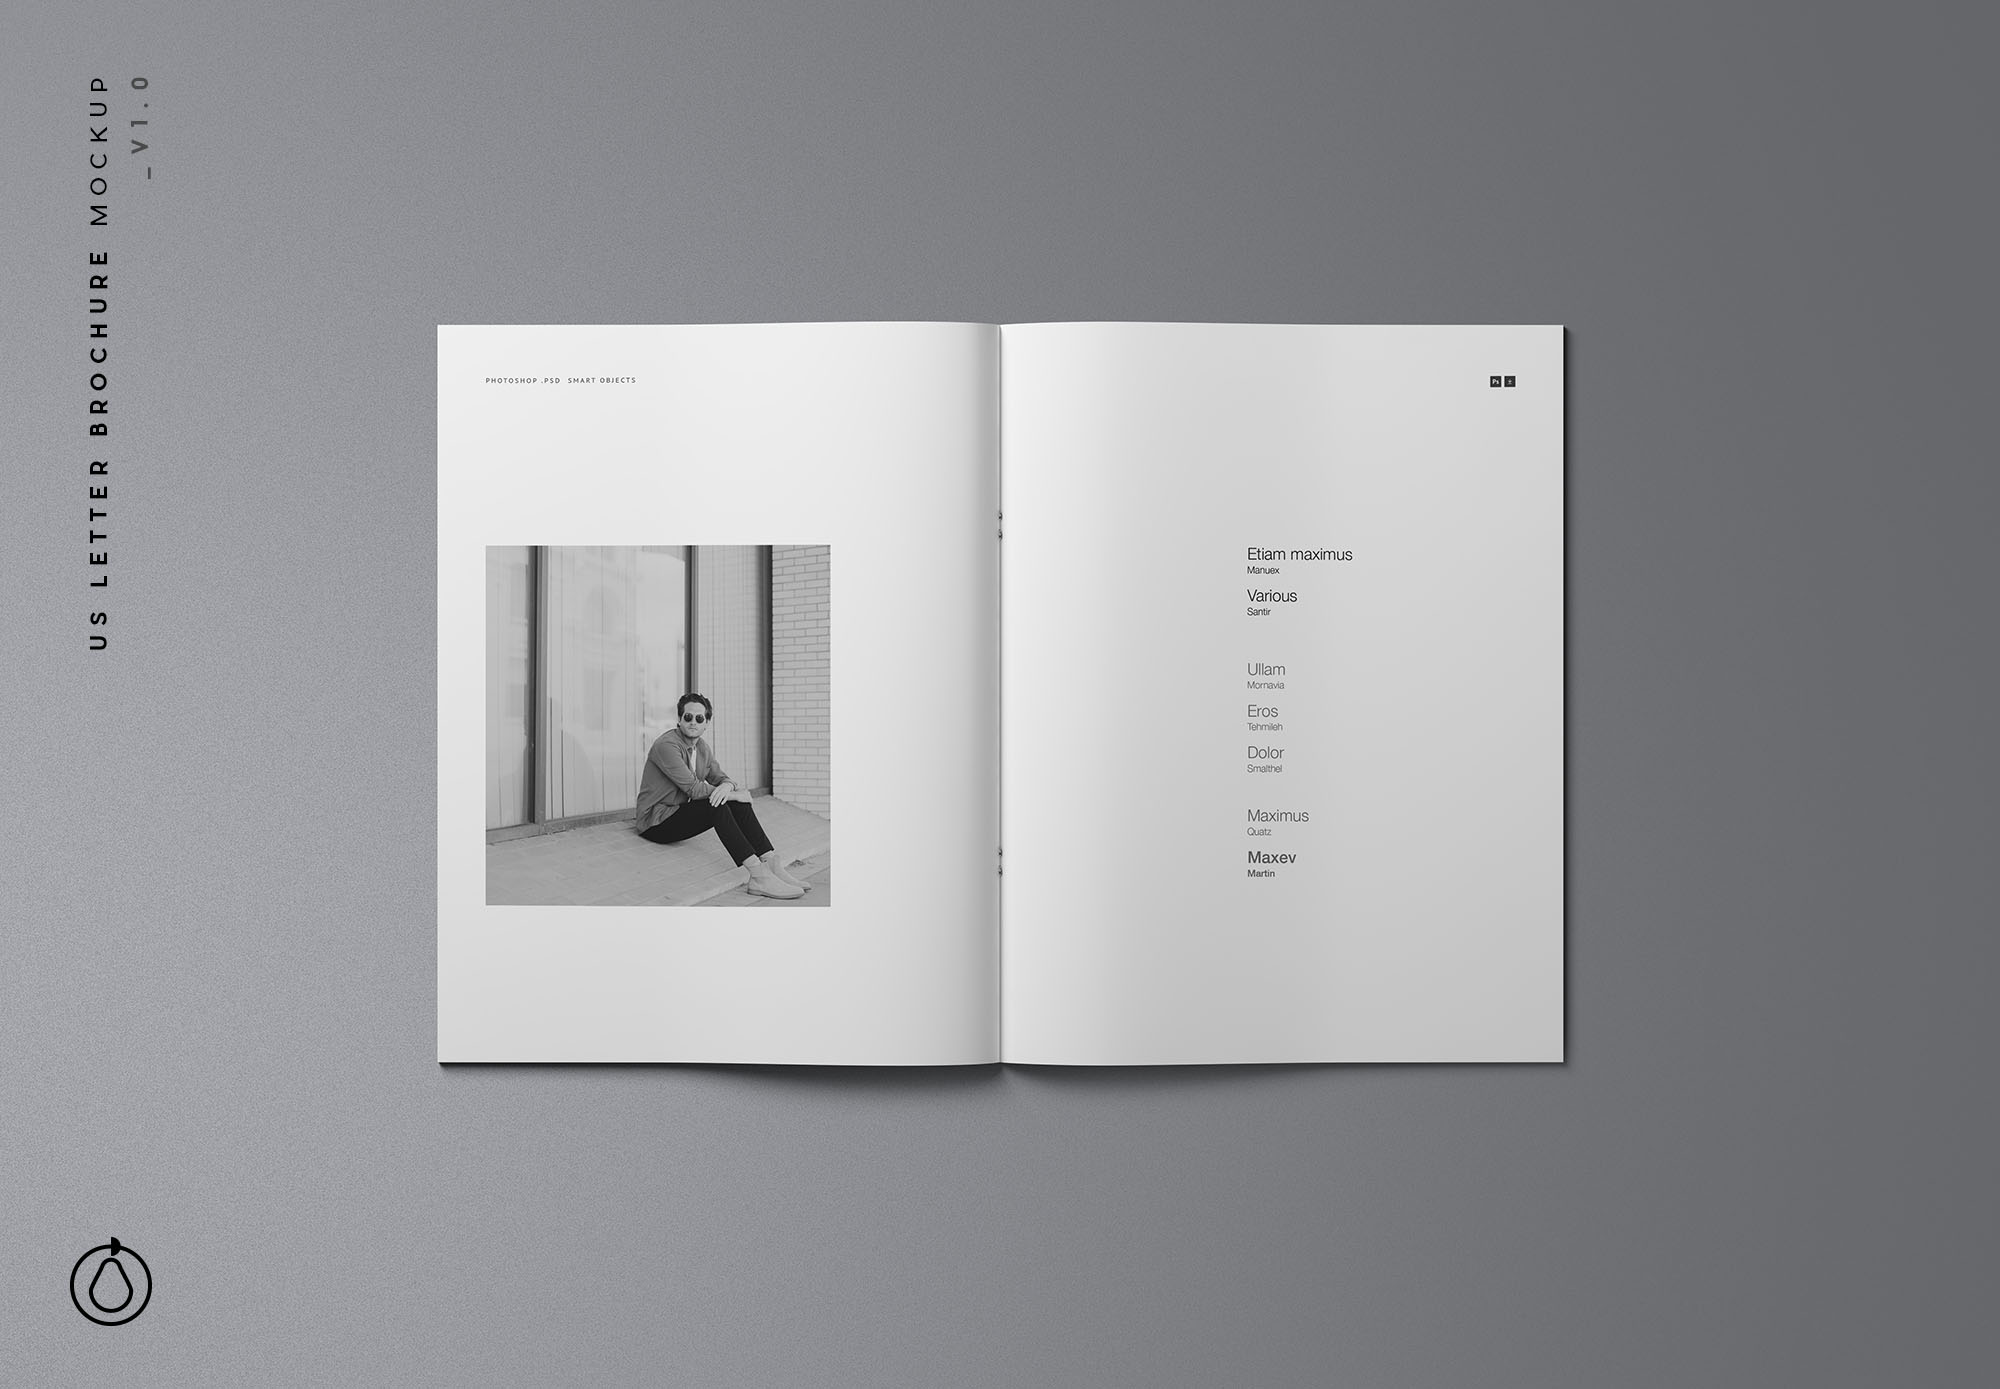 时尚简约优雅的专业画册杂志设计样机展示 Fashion Simple And Elegant Professional Album Magazine Design Prototype Show[2.16G]插图1